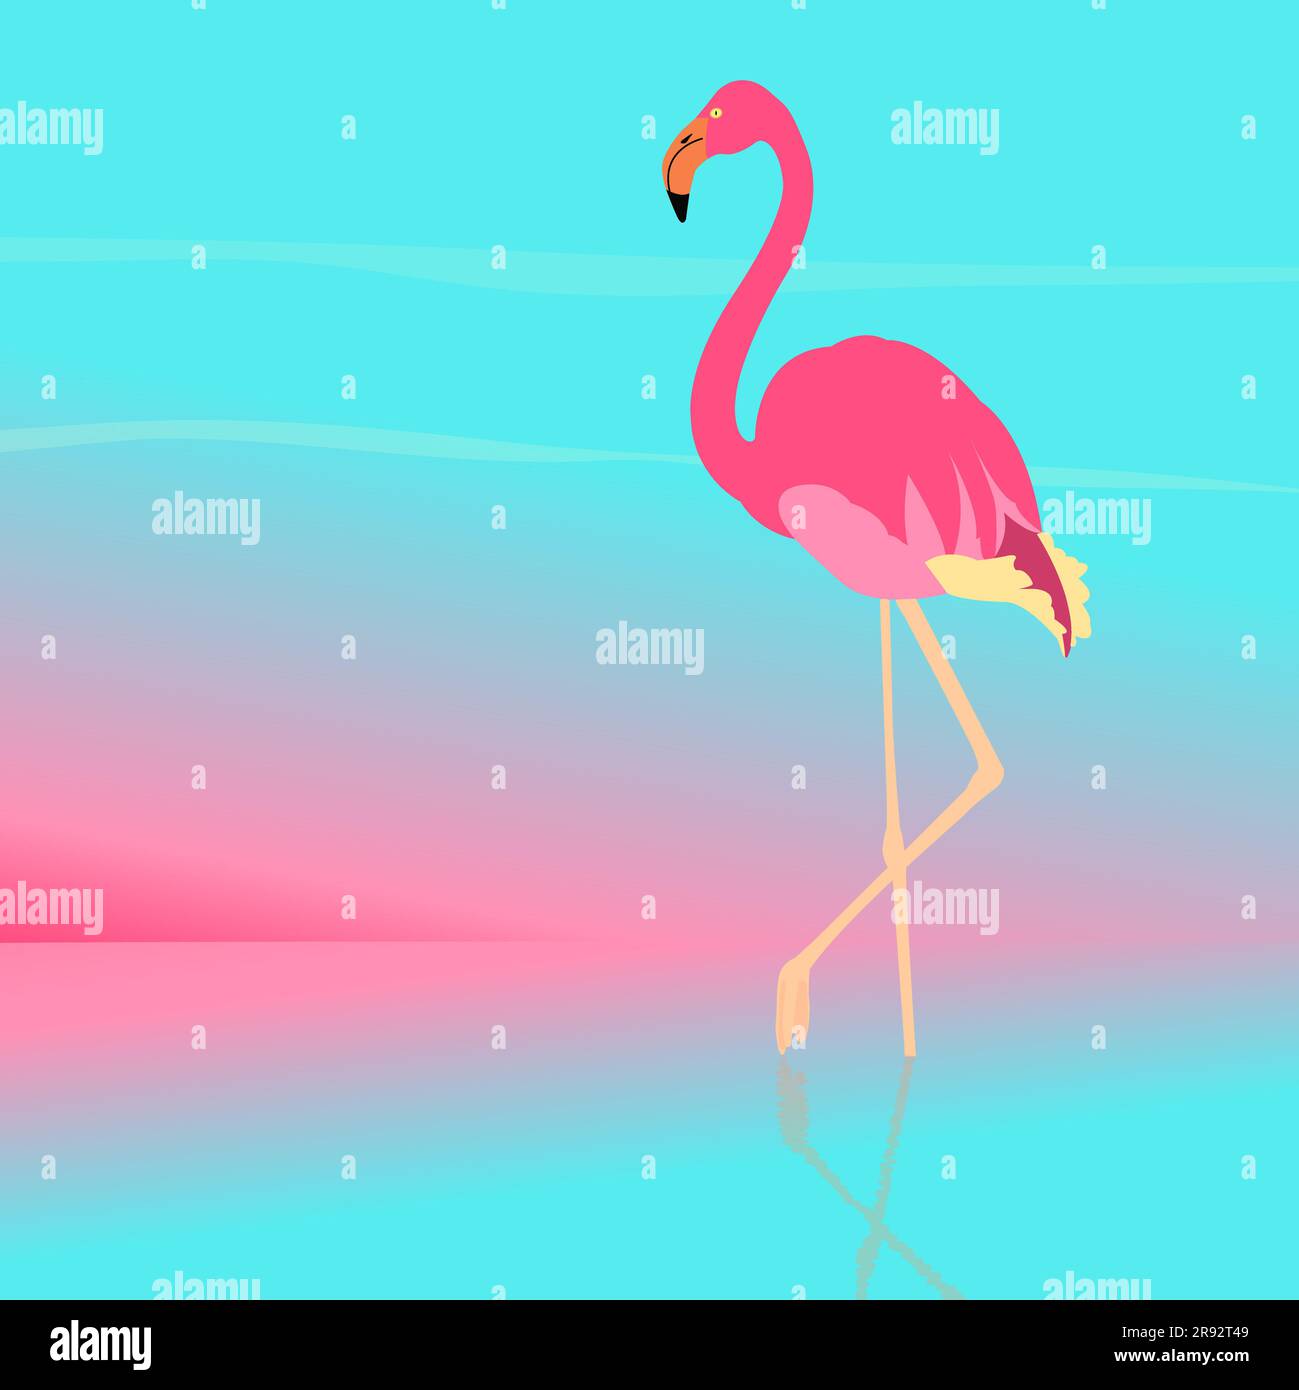 Flamingo, illustration Stock Photo